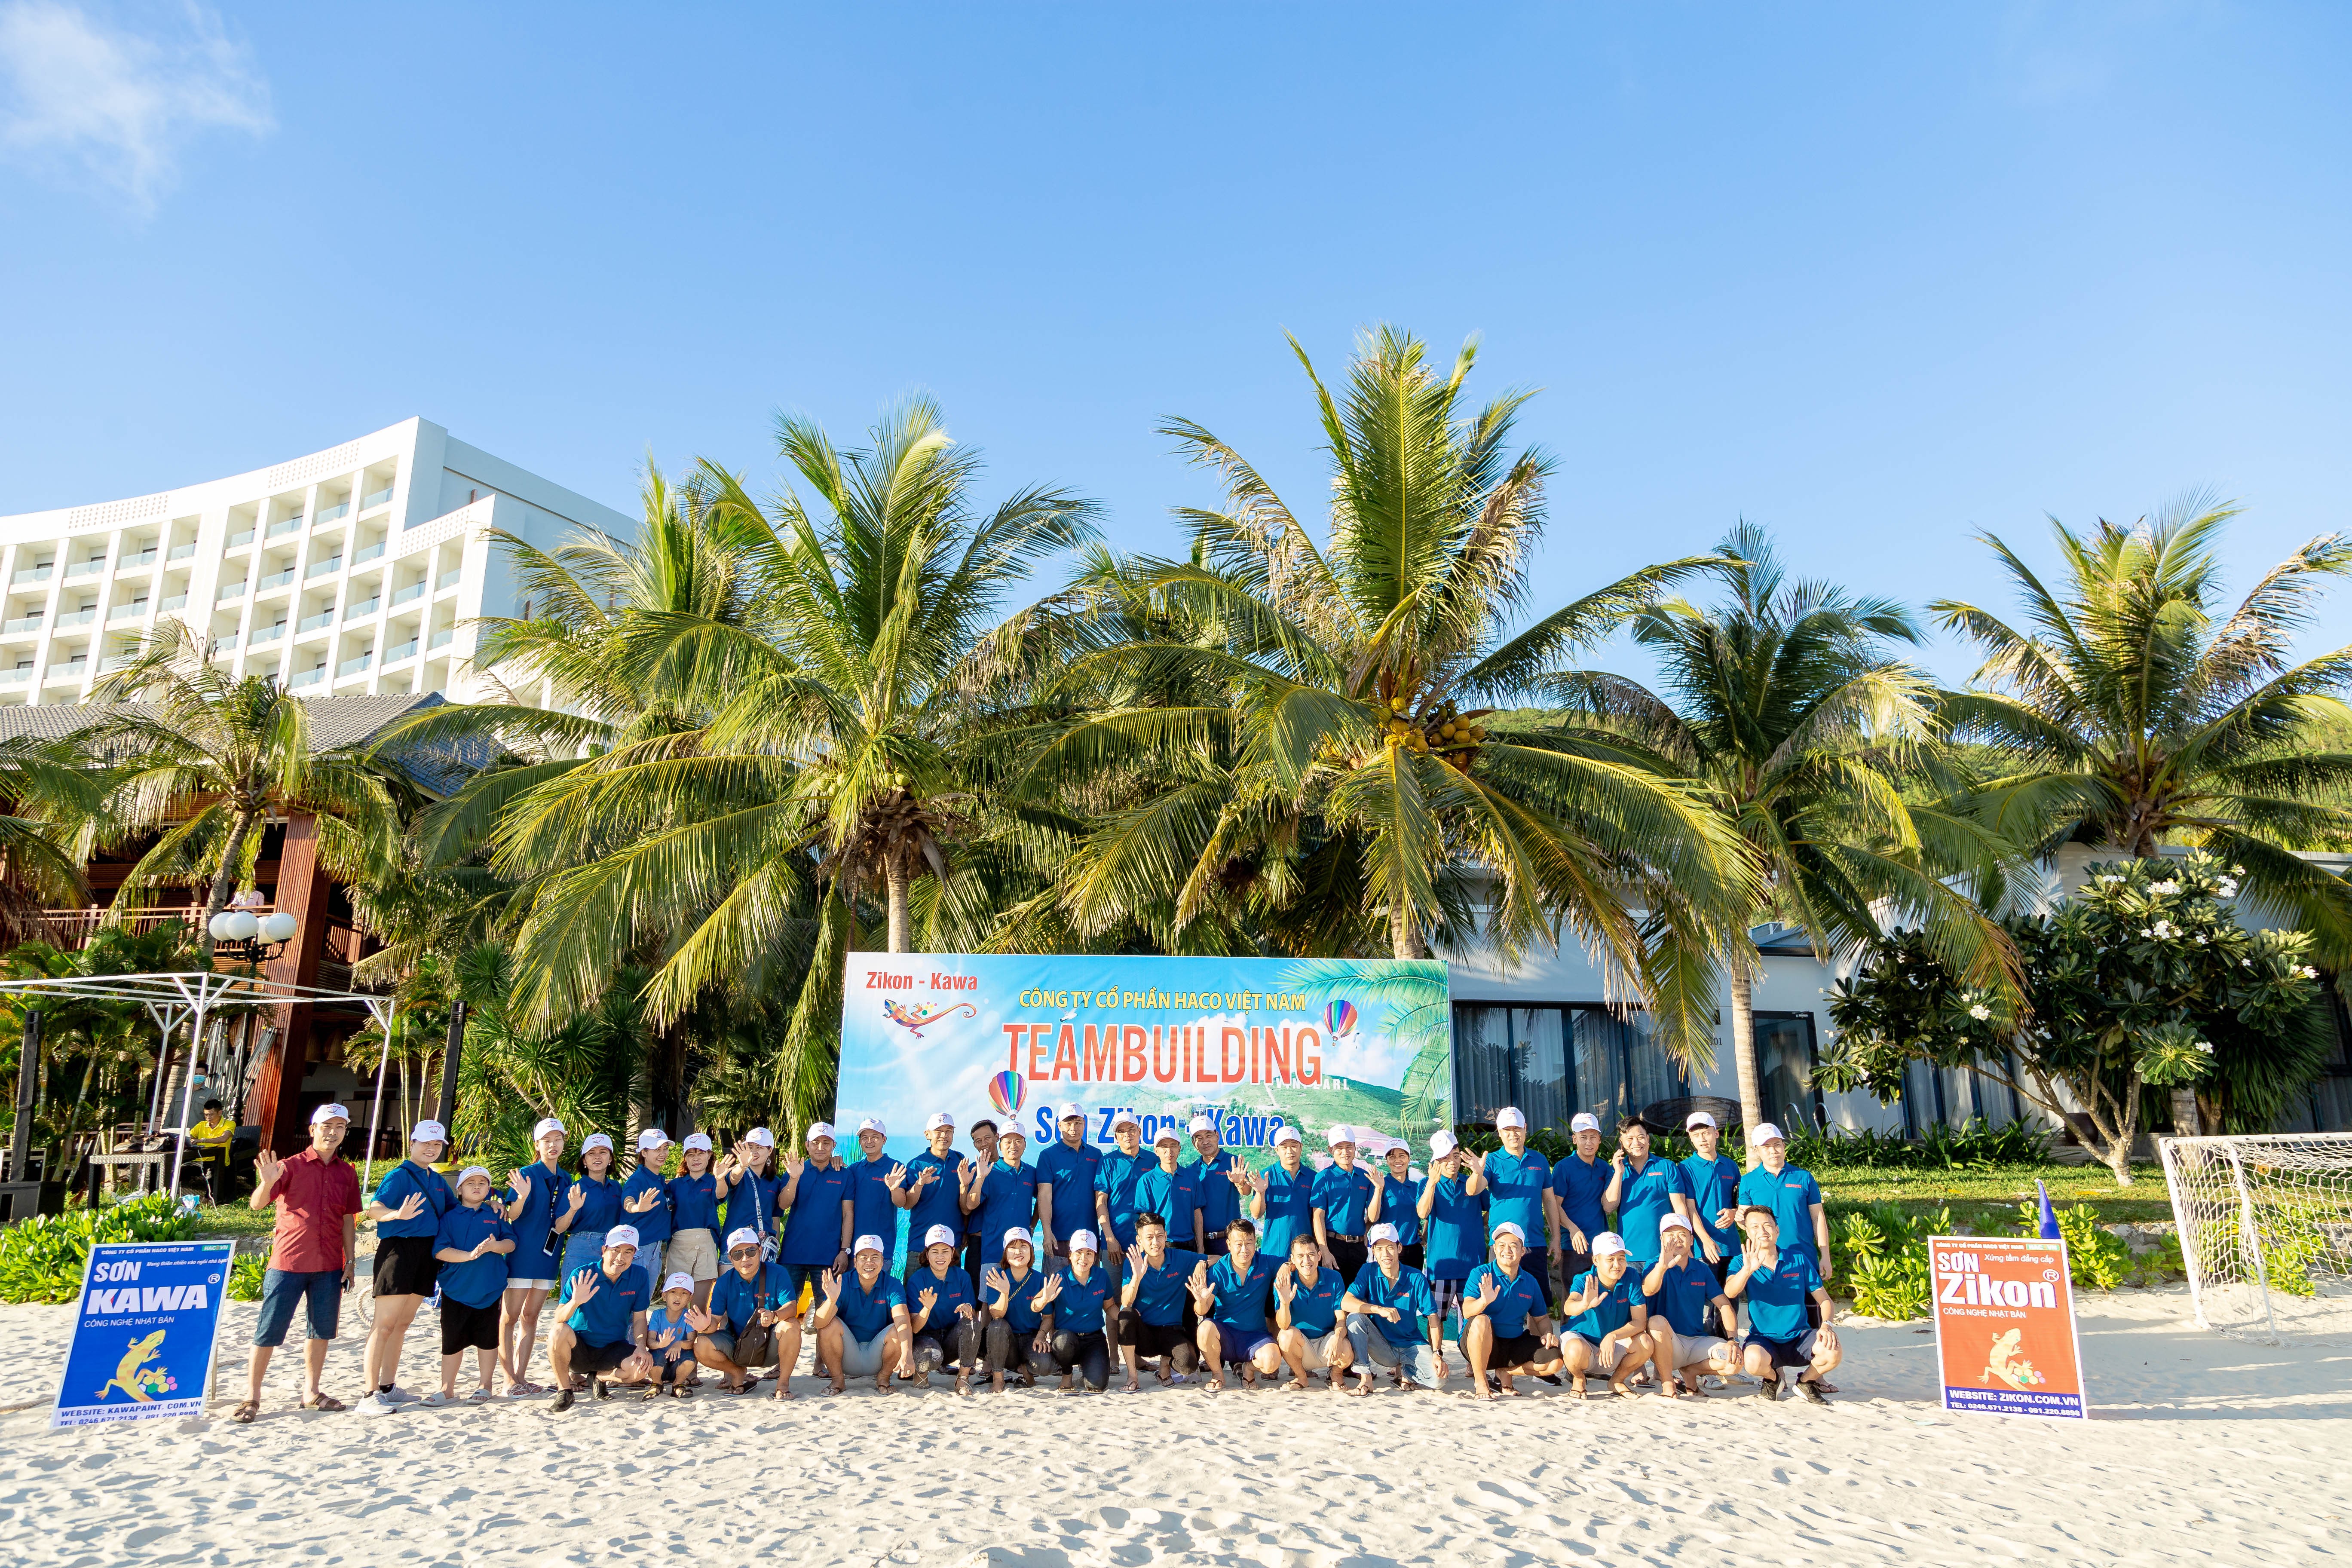 Du lịch Nha Trang 2020 - Cuộc họp mặt của người chiến thắng